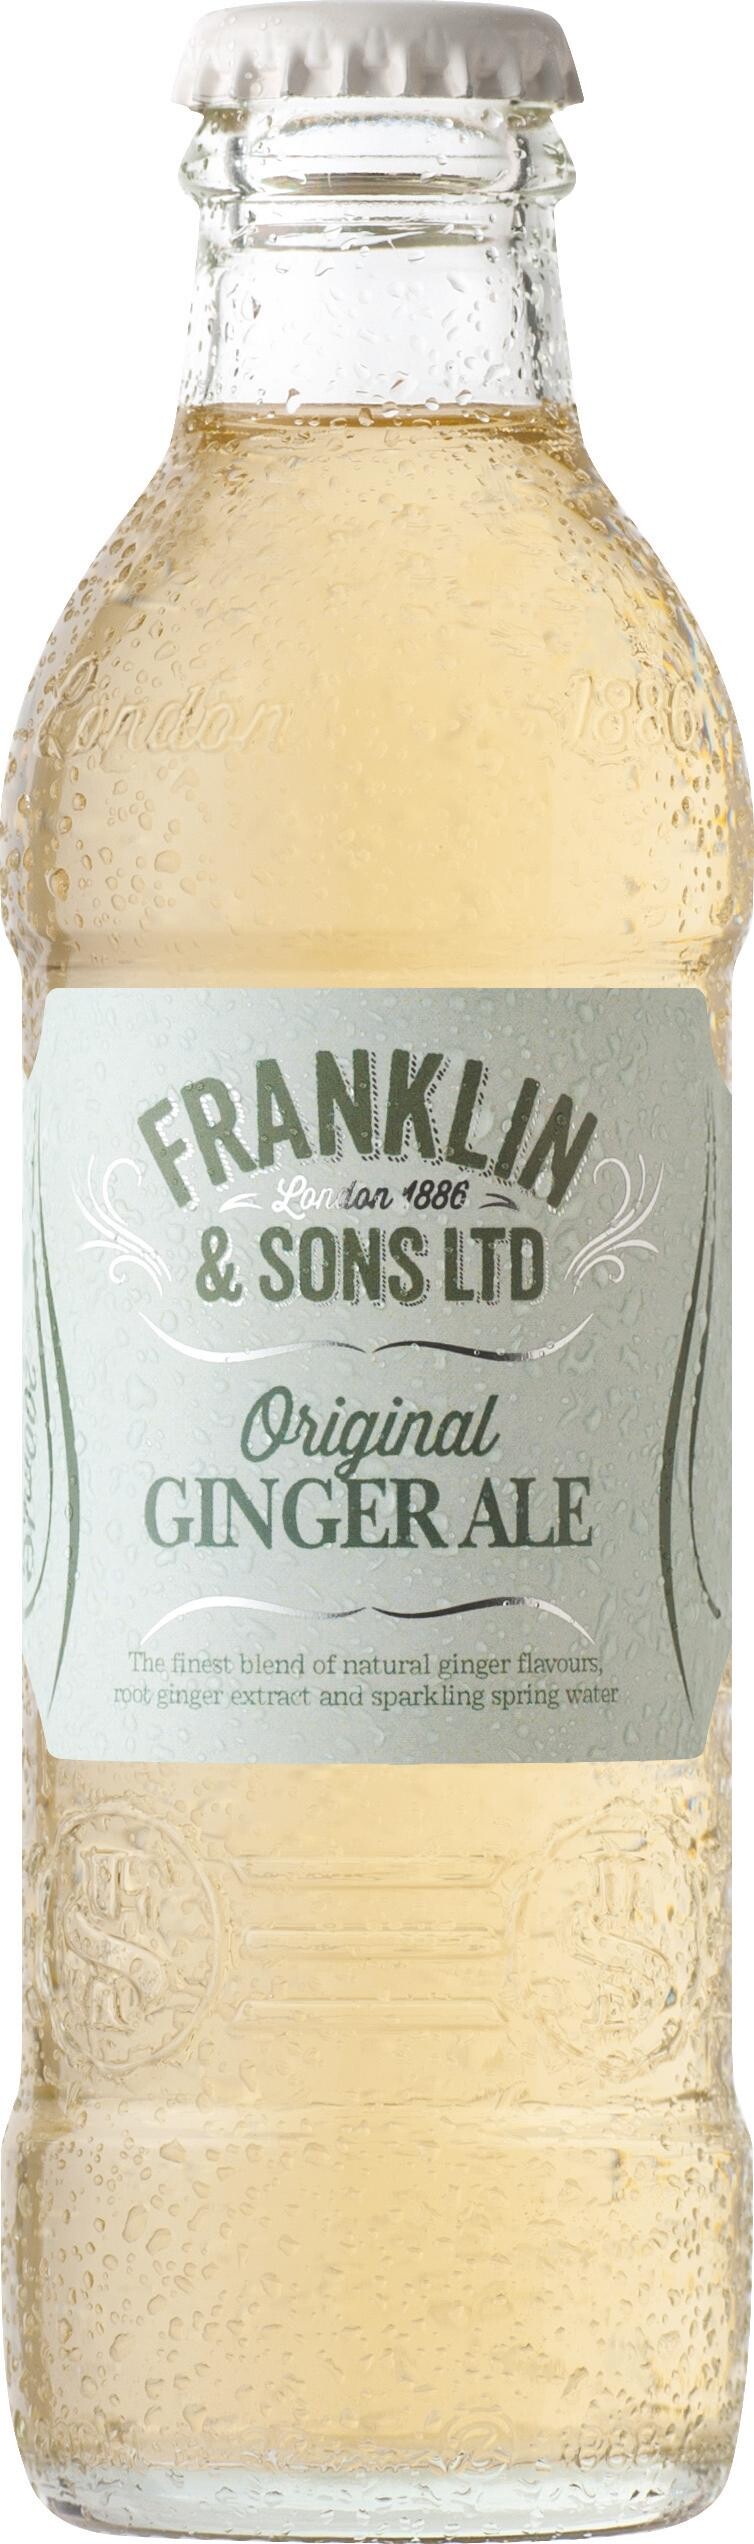 Franklin & Sons LTD Original Ginger Ale 200ml